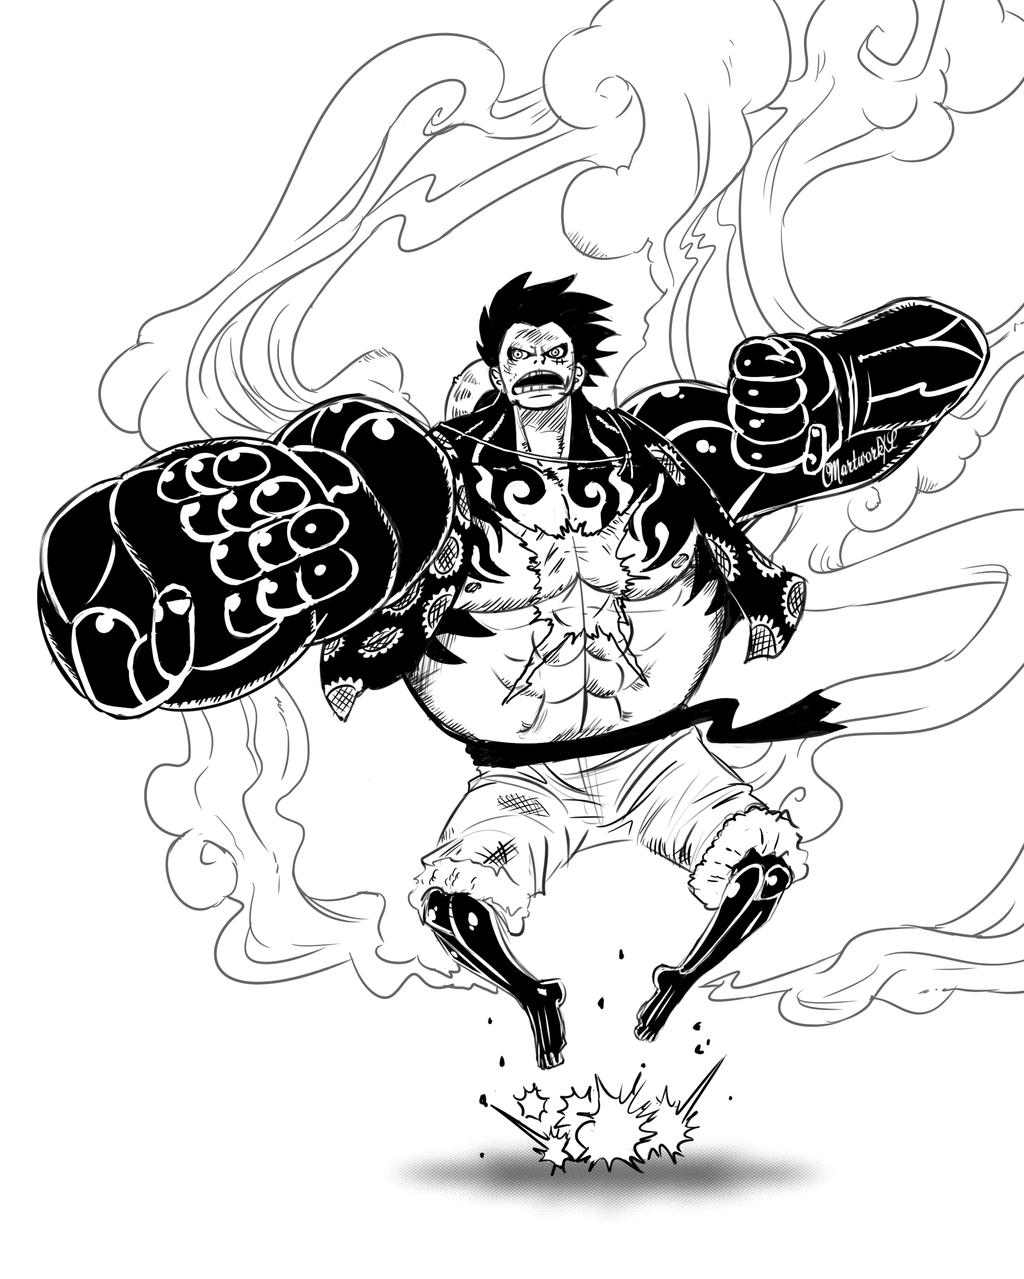 Luffy's Gear Fourth #2 Piece by CMartworkXL on DeviantArt